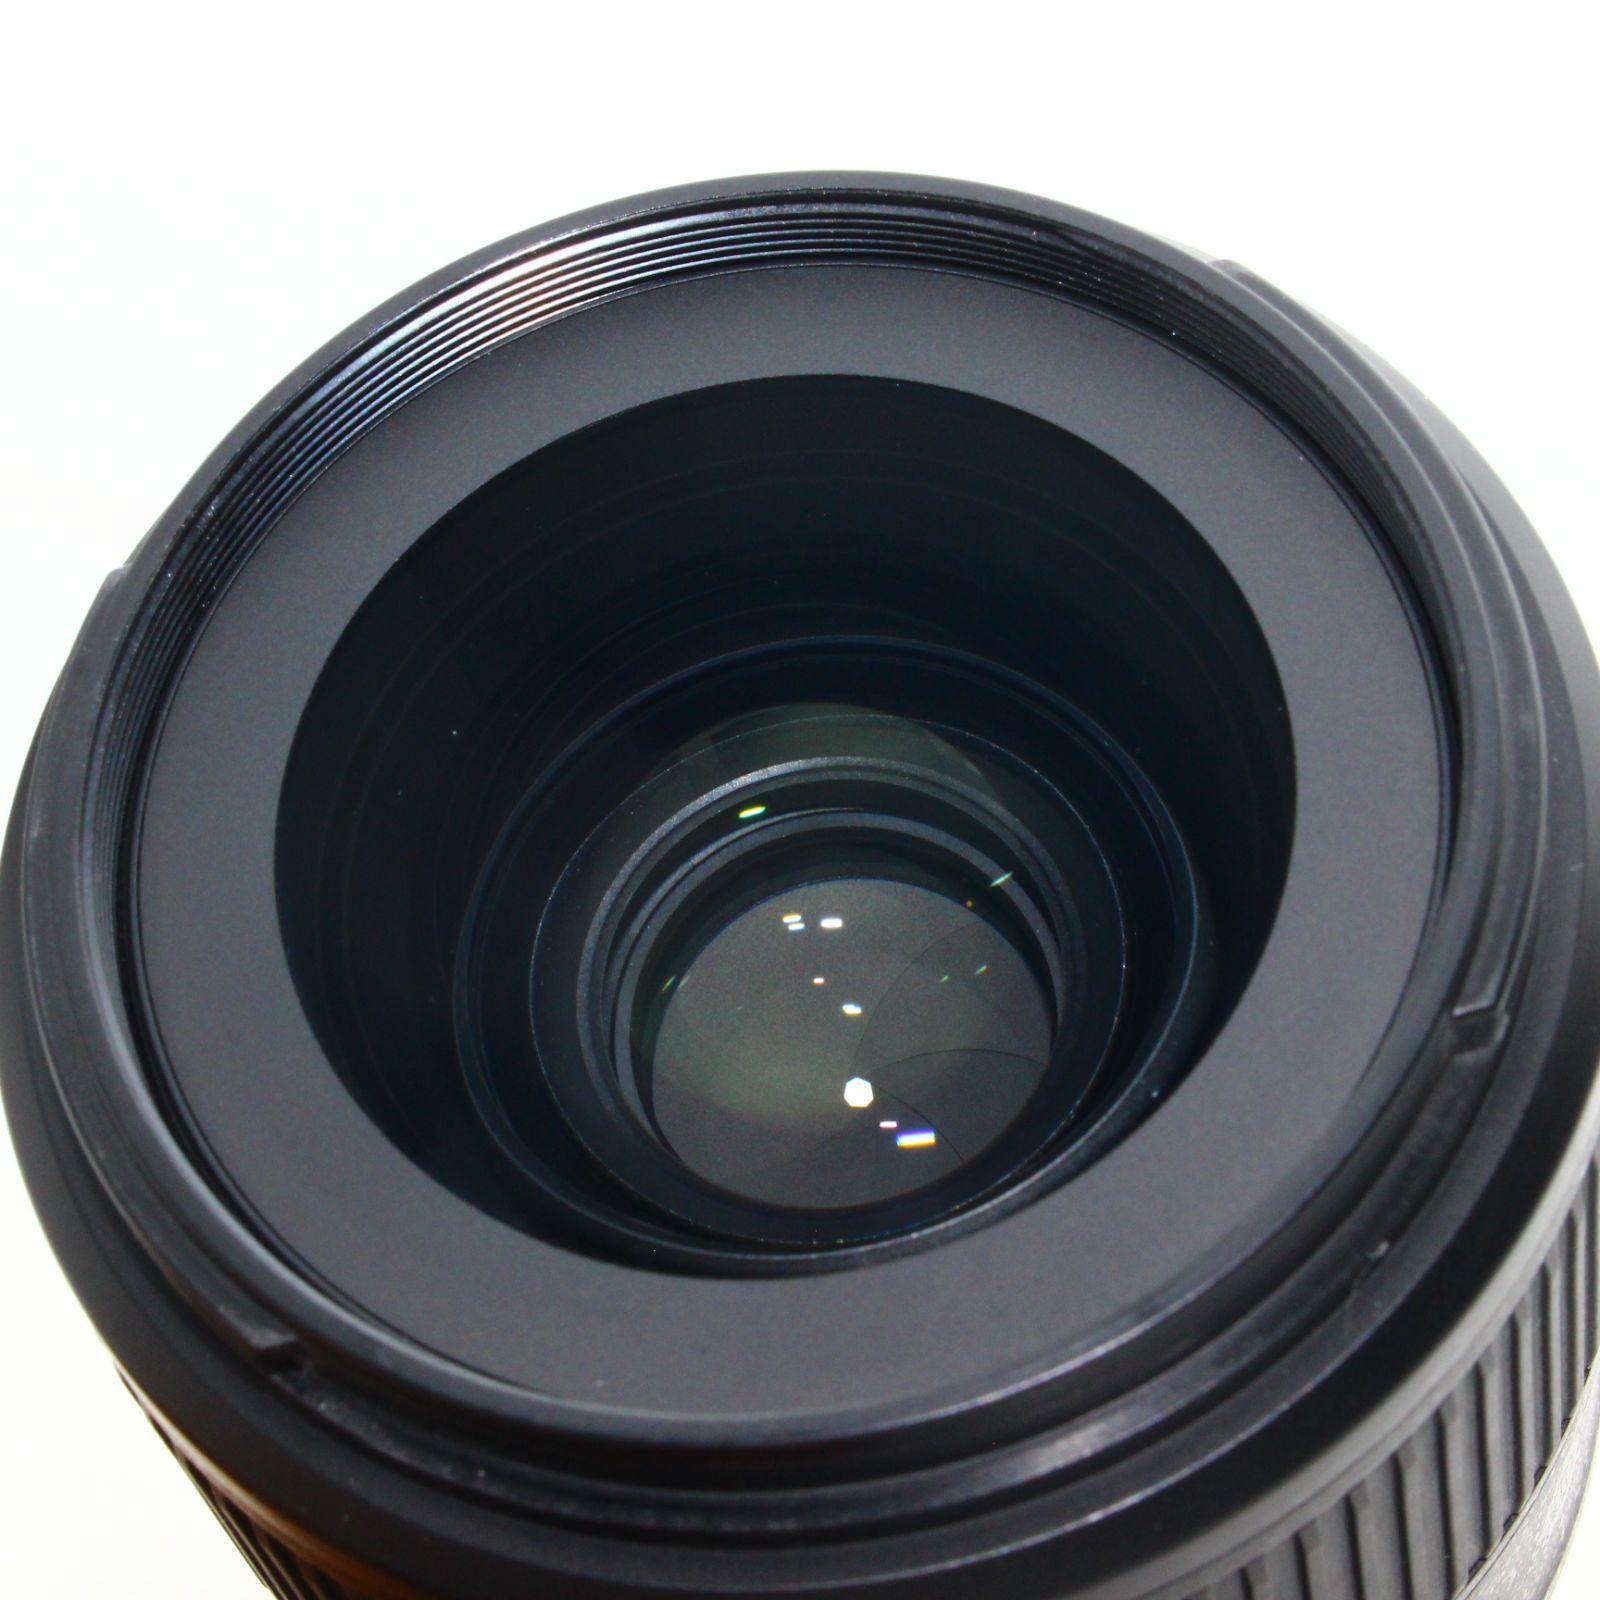 Nikon 単焦点レンズ AF-S NIKKOR 35mm f/1.8G ED フルサイズ対応 - M&T